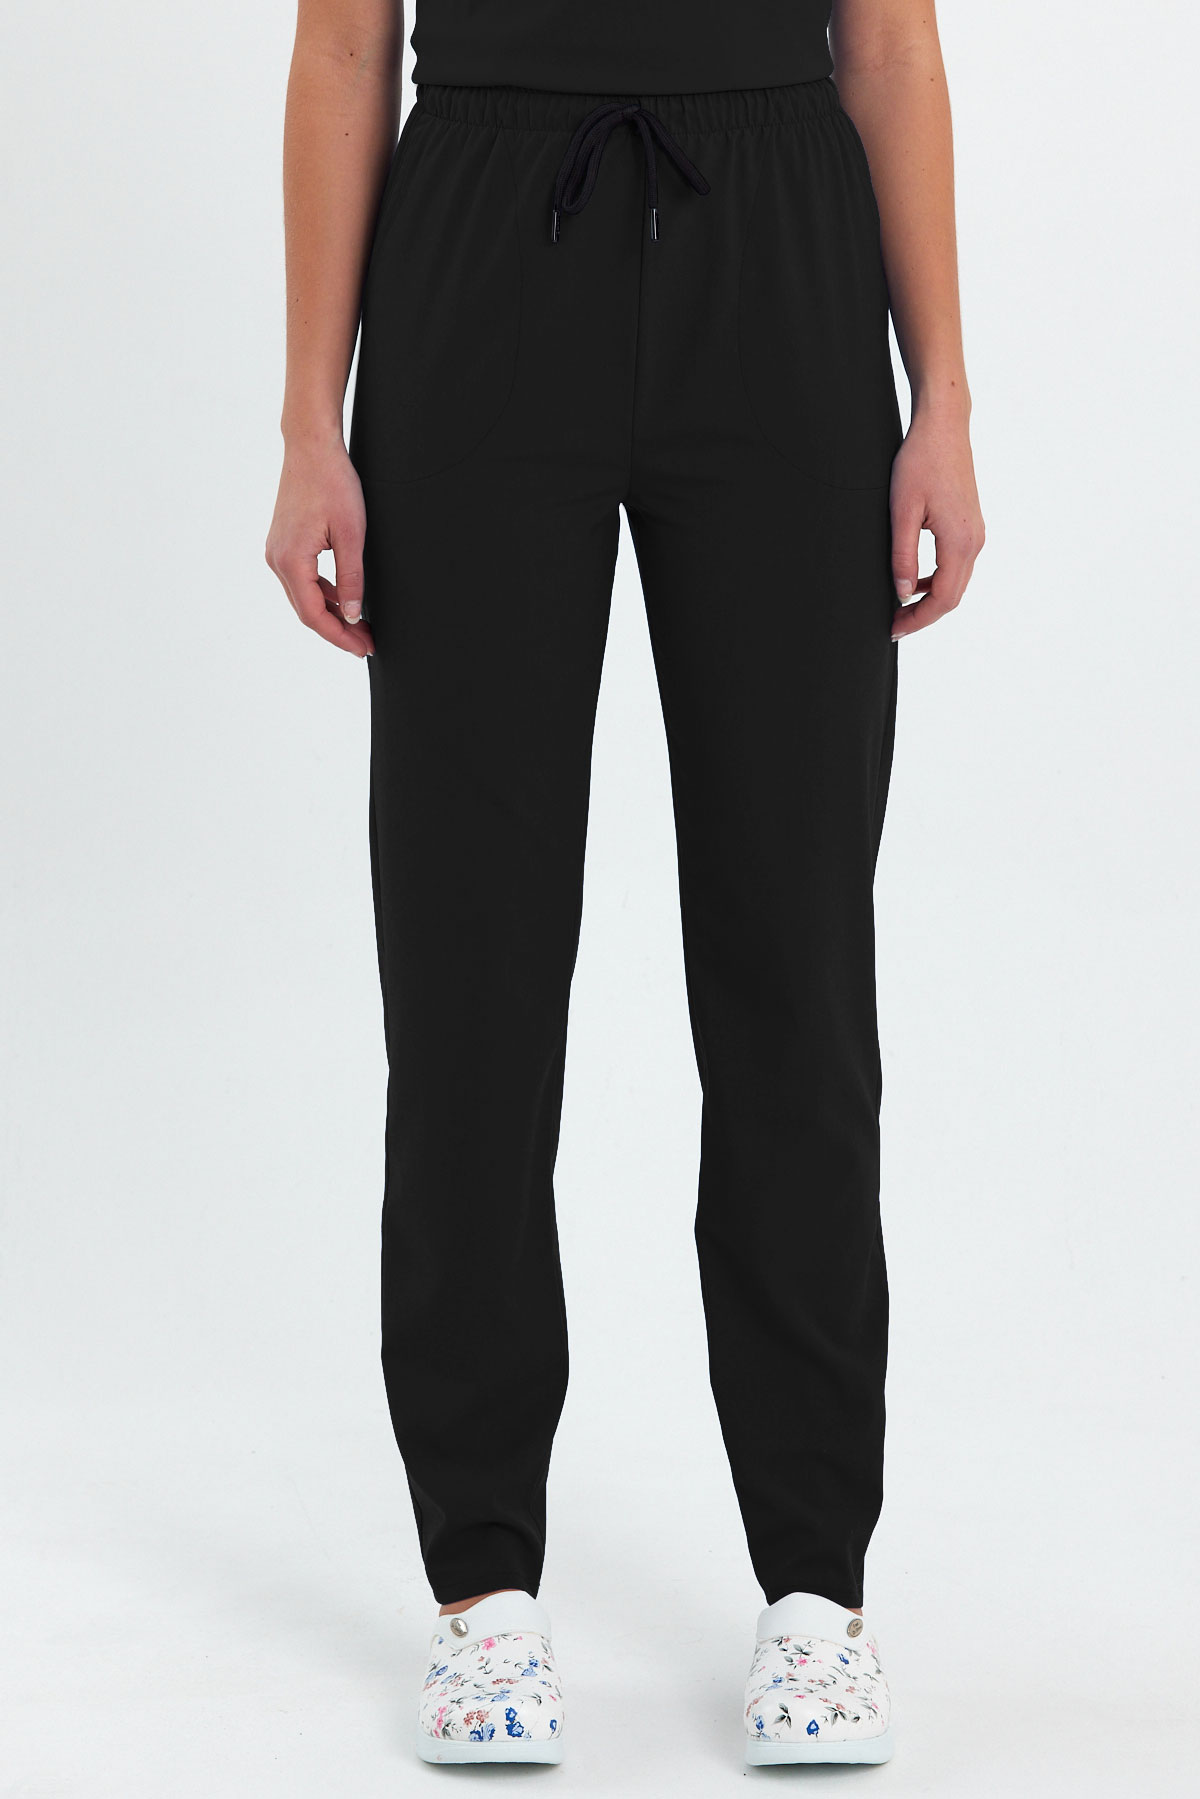 LAME 1009 Basic Likralı Siyah Scrubs, Hemşire Forması Klasik Paça Pantolon